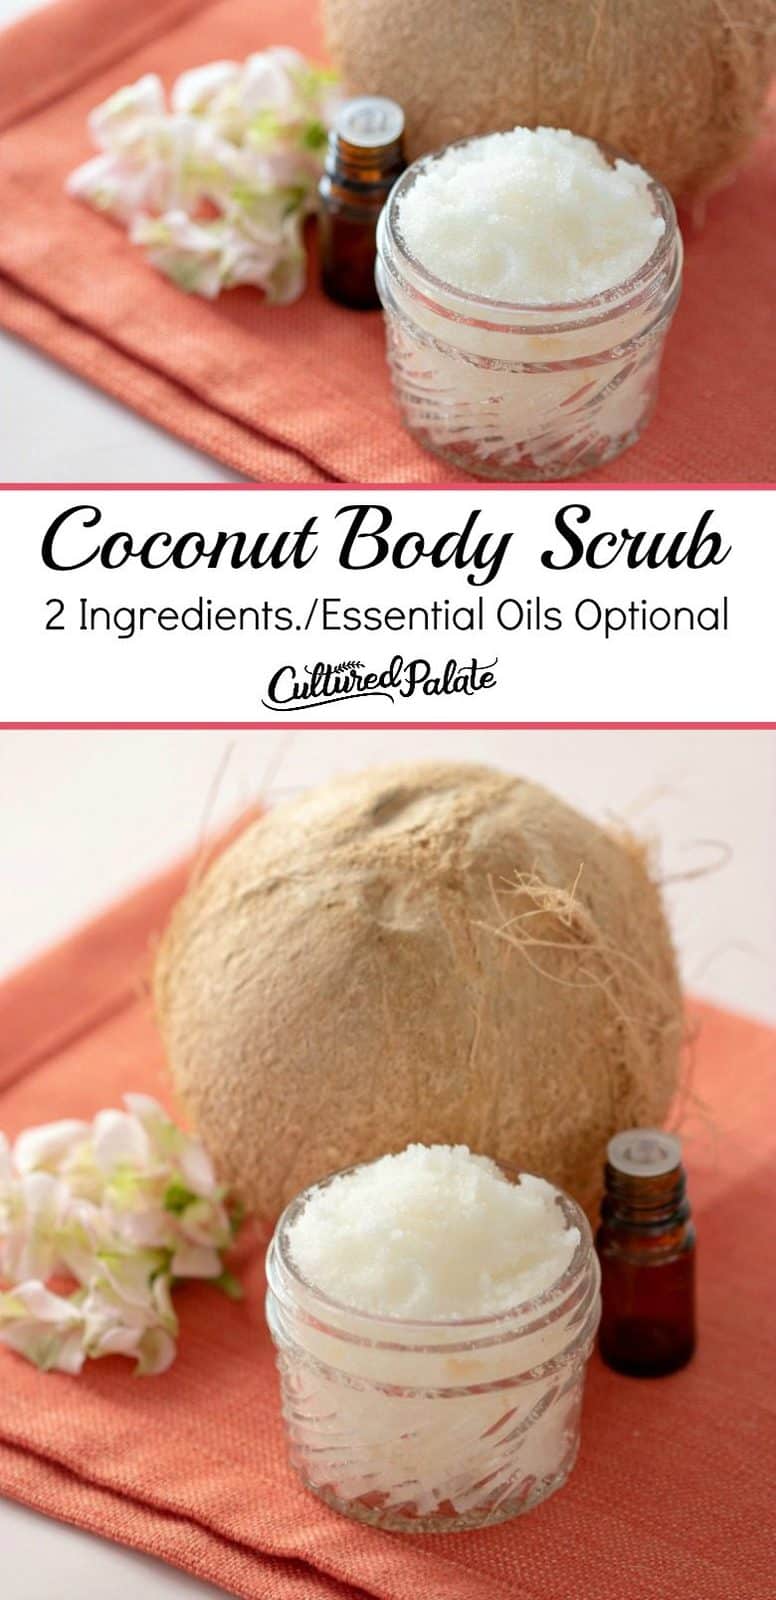 Coconut Body Scrub Recipe - Sugar Scrubs | Cultured Palate